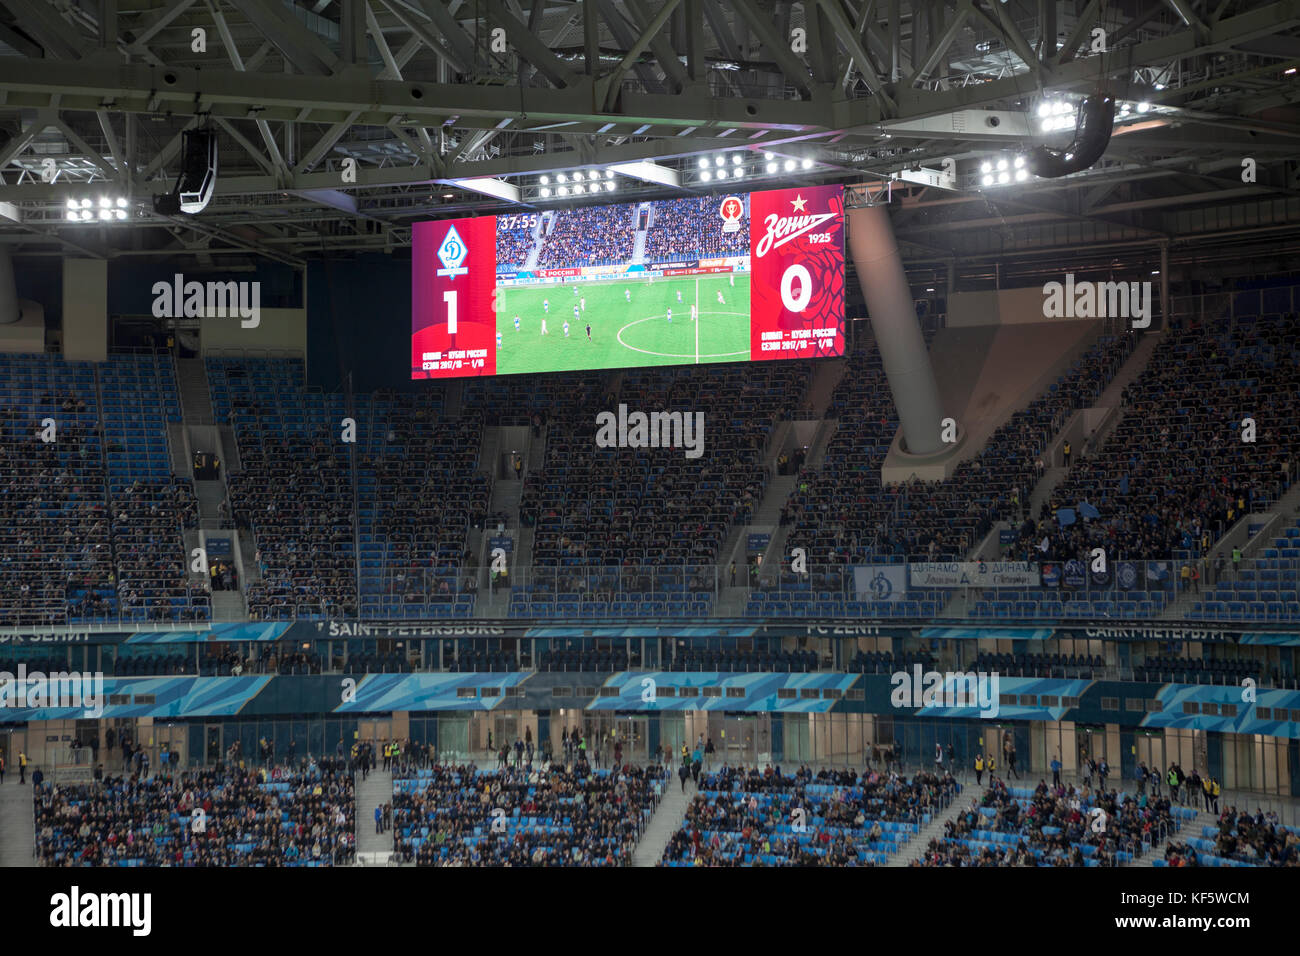 Saint-Petersburg, Russland - ca. Okt, 2017: Bildschirm mit den Spielstand 1:0 für Dynamo fc. russische Meister Fußballspiel zwischen Zenit und Dinamo saint-pe Stockfoto